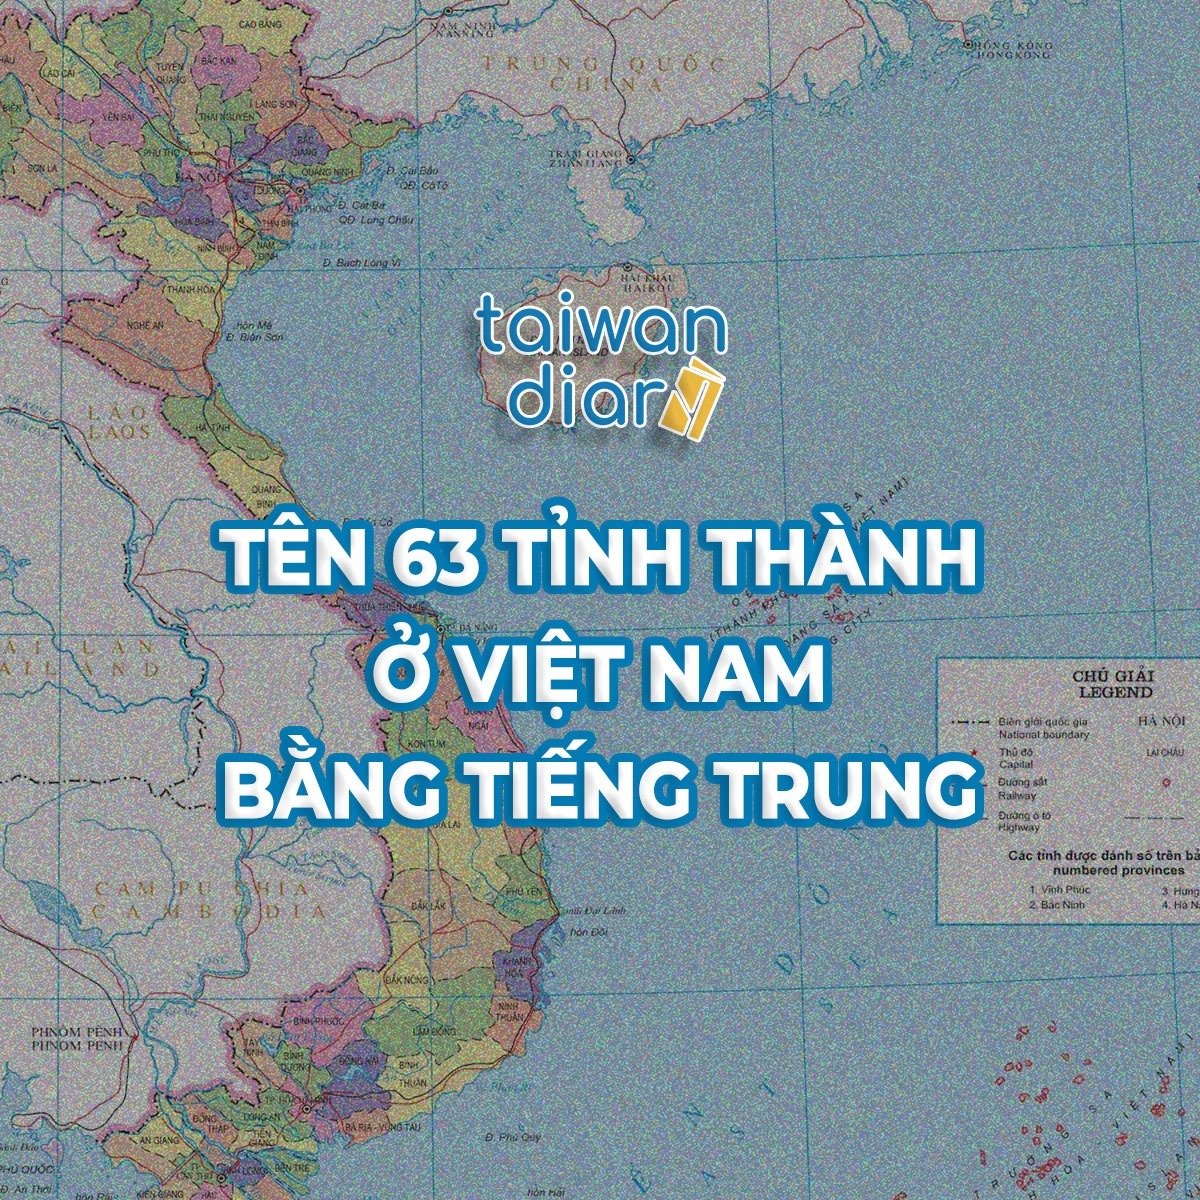 TIẾNG TRUNG PHỒN THỂ: 63 TỈNH THÀNH Ở VIỆT NAM - Taiwan Diary